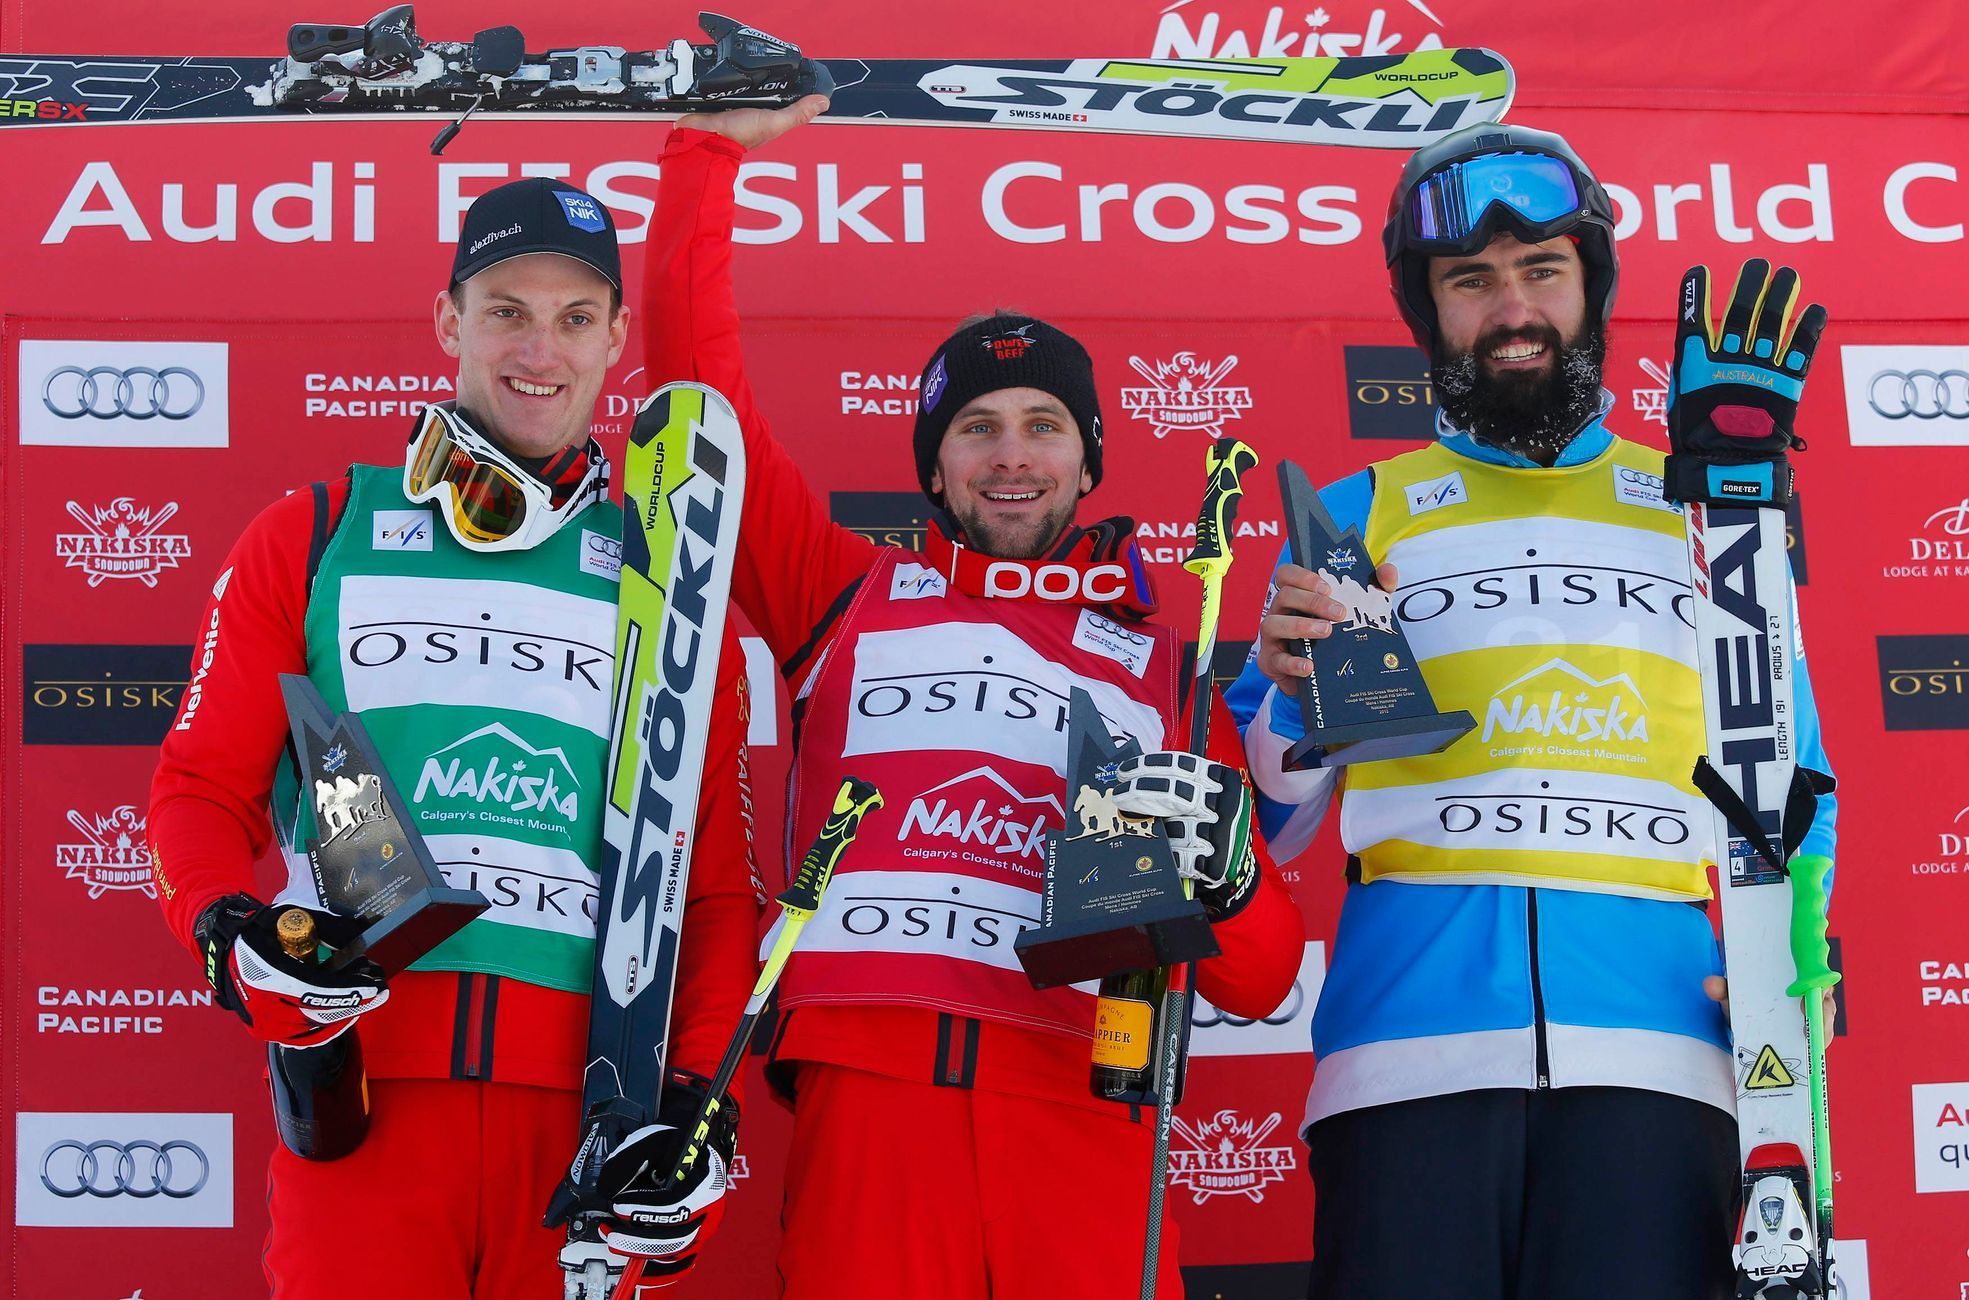 Stupně vítězú závodu Světového poháru ve skikrosu v kandaské Nakiskce (Armin Niederer - uprostřed, Alex Fiva - vlevo, Anton Grimus)